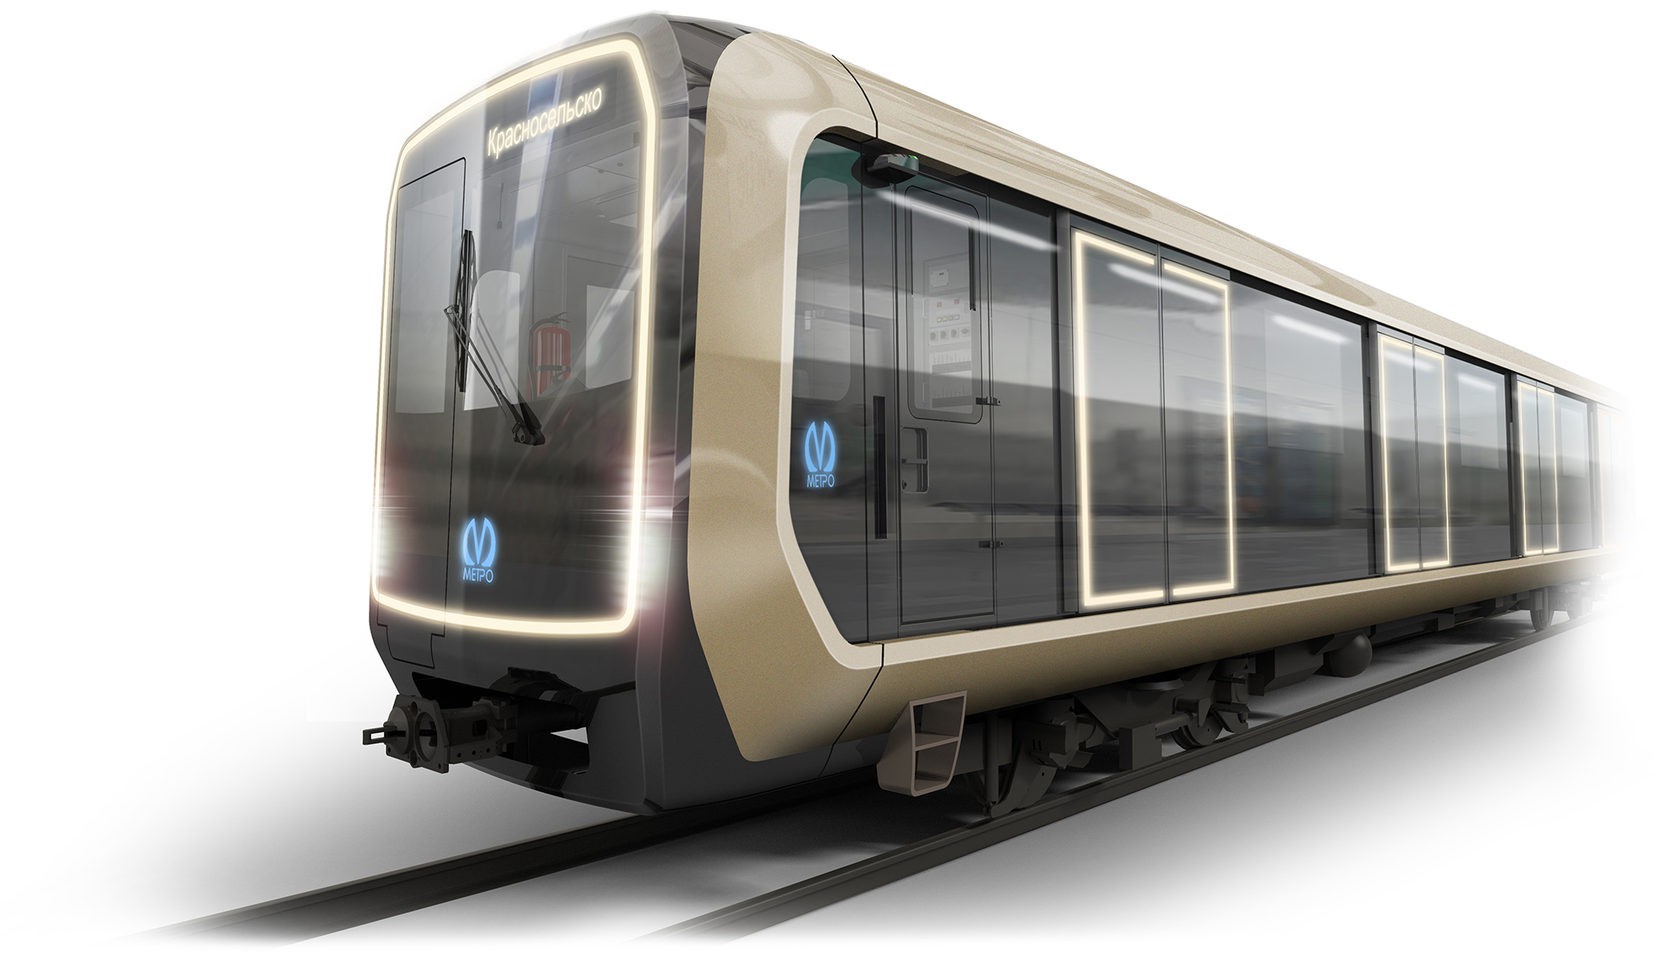 Дизайн-проект поезда метро Smart, представленный ТМХ в 2019 году